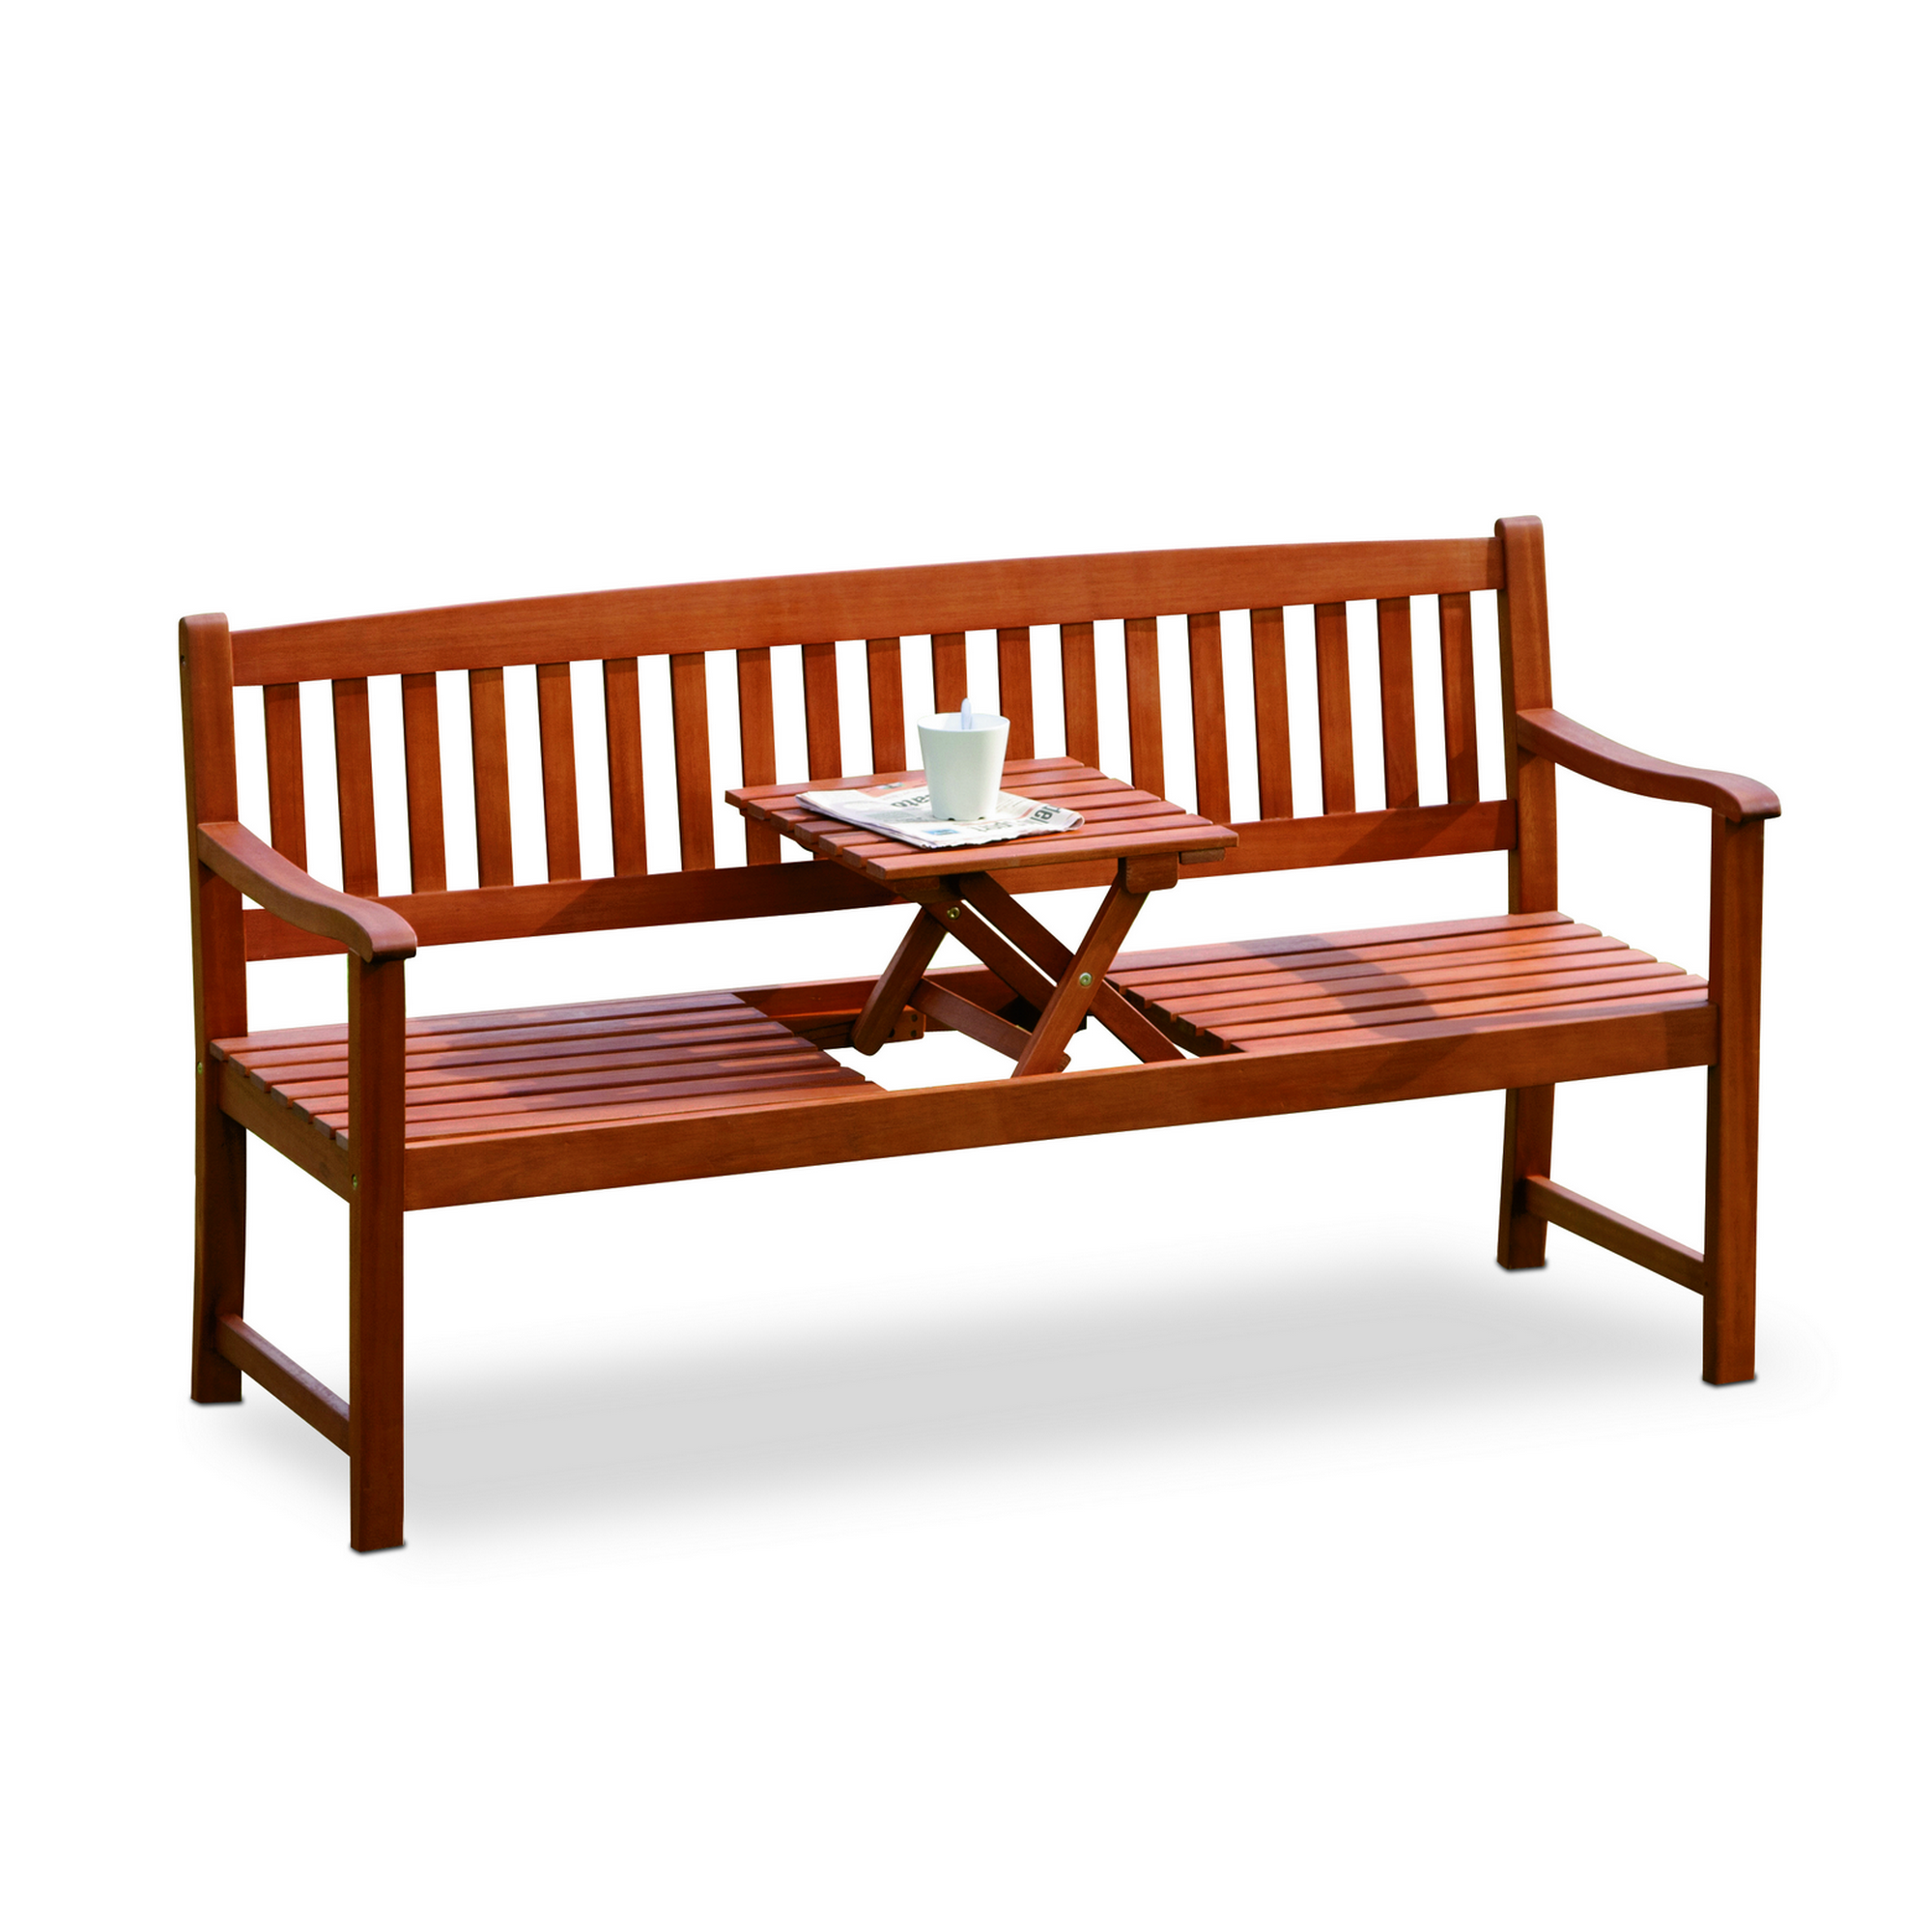 Gartenbank 'Florida' mit Tisch, 3-Sitzer, braun, 159 x 88 x 60 cm + product picture